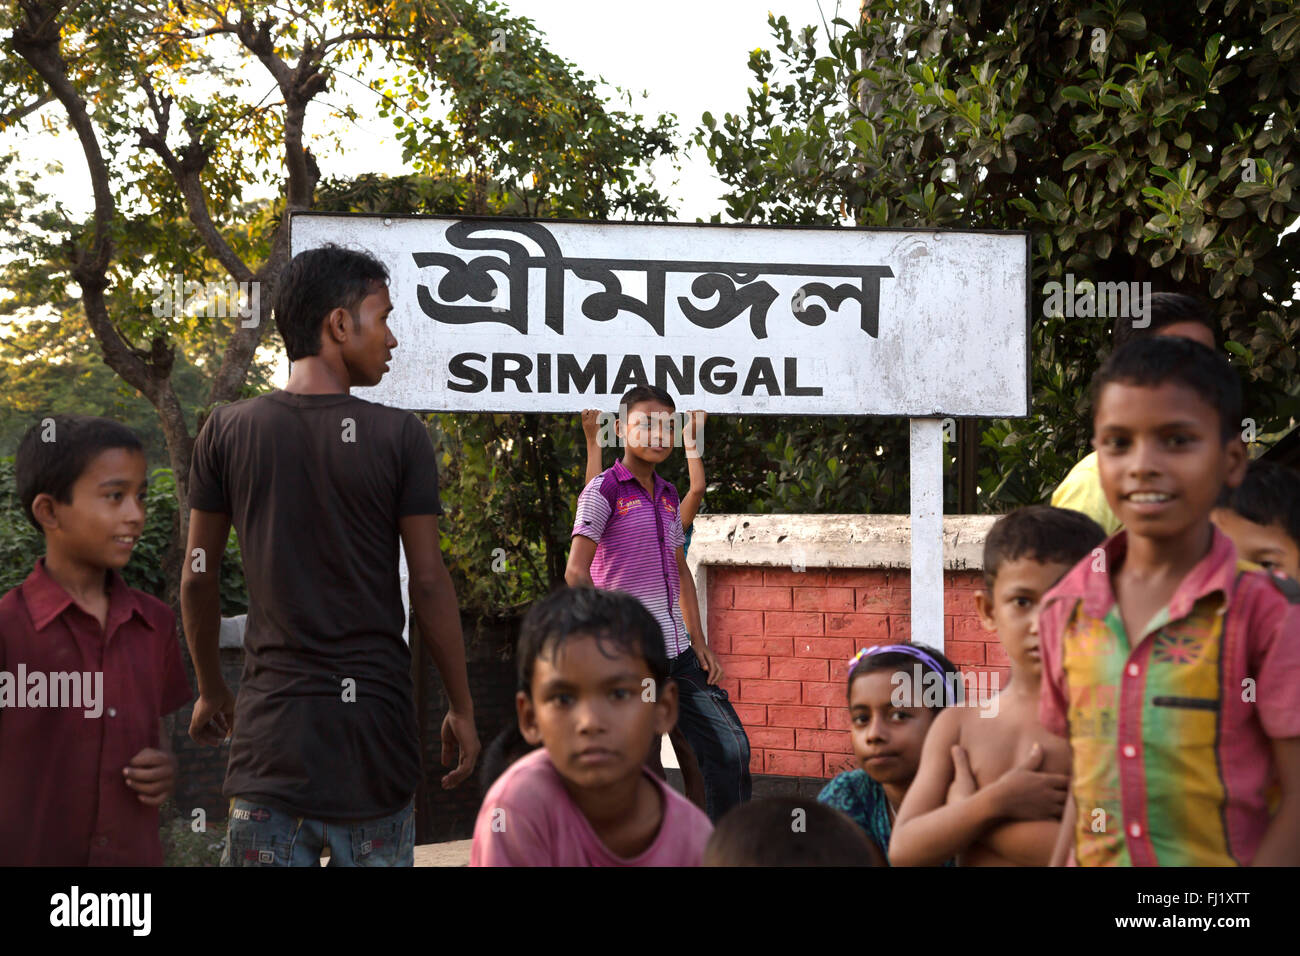 Eine Gruppe von Kindern stand auf der Sreemangal Bahnhof vor der rimangal" in bengalischer Sprache, Bangladesch Stockfoto